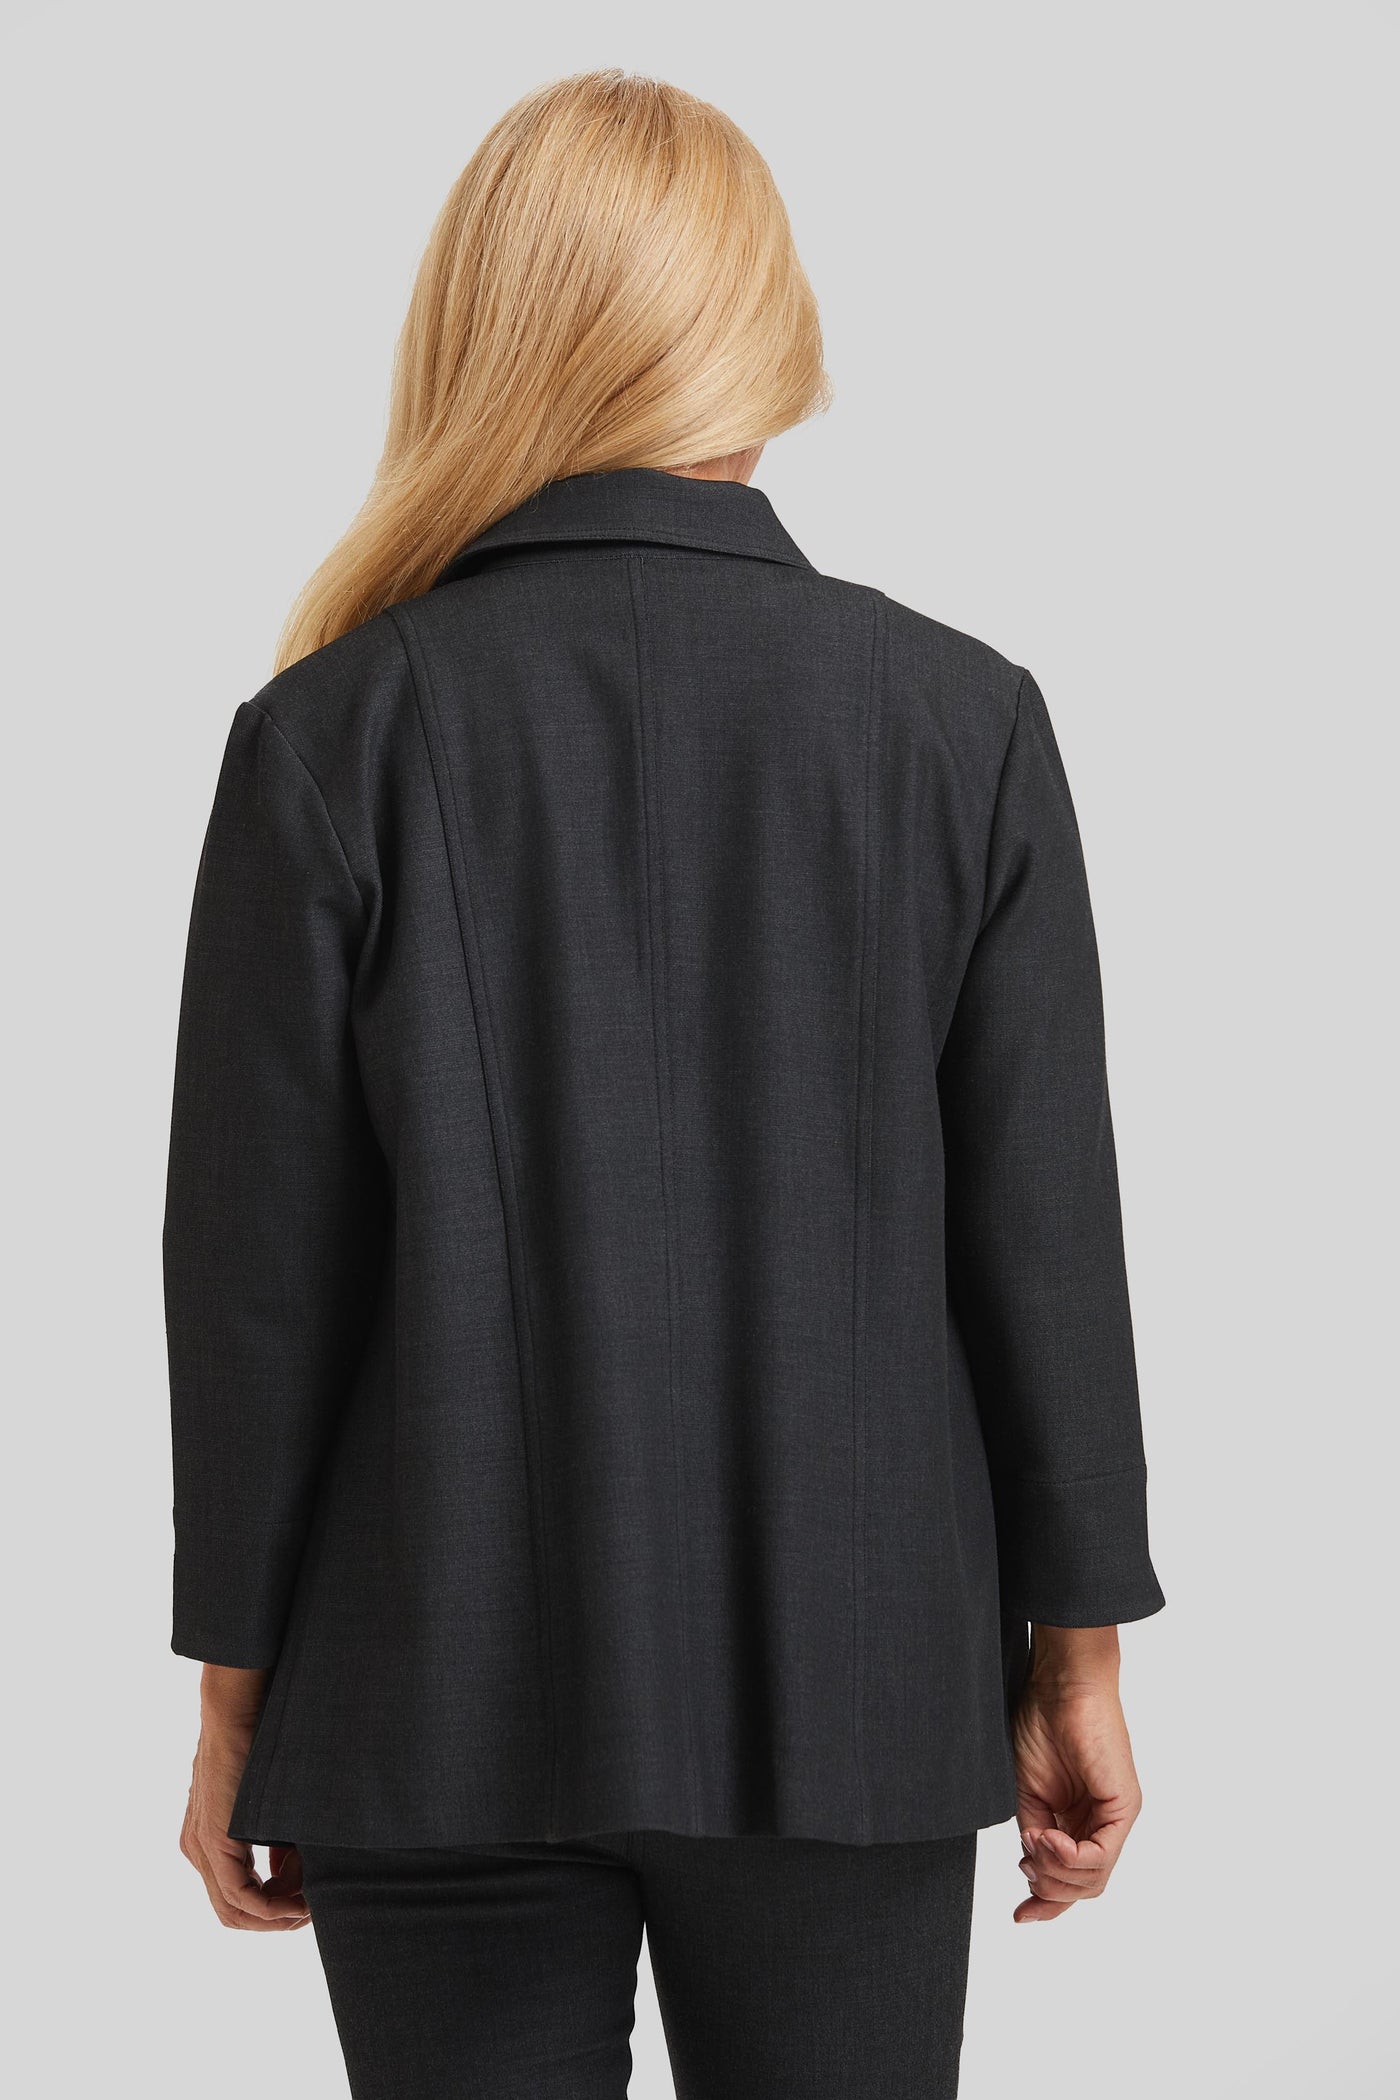 Kate Shirt Jacket- FINAL SALE